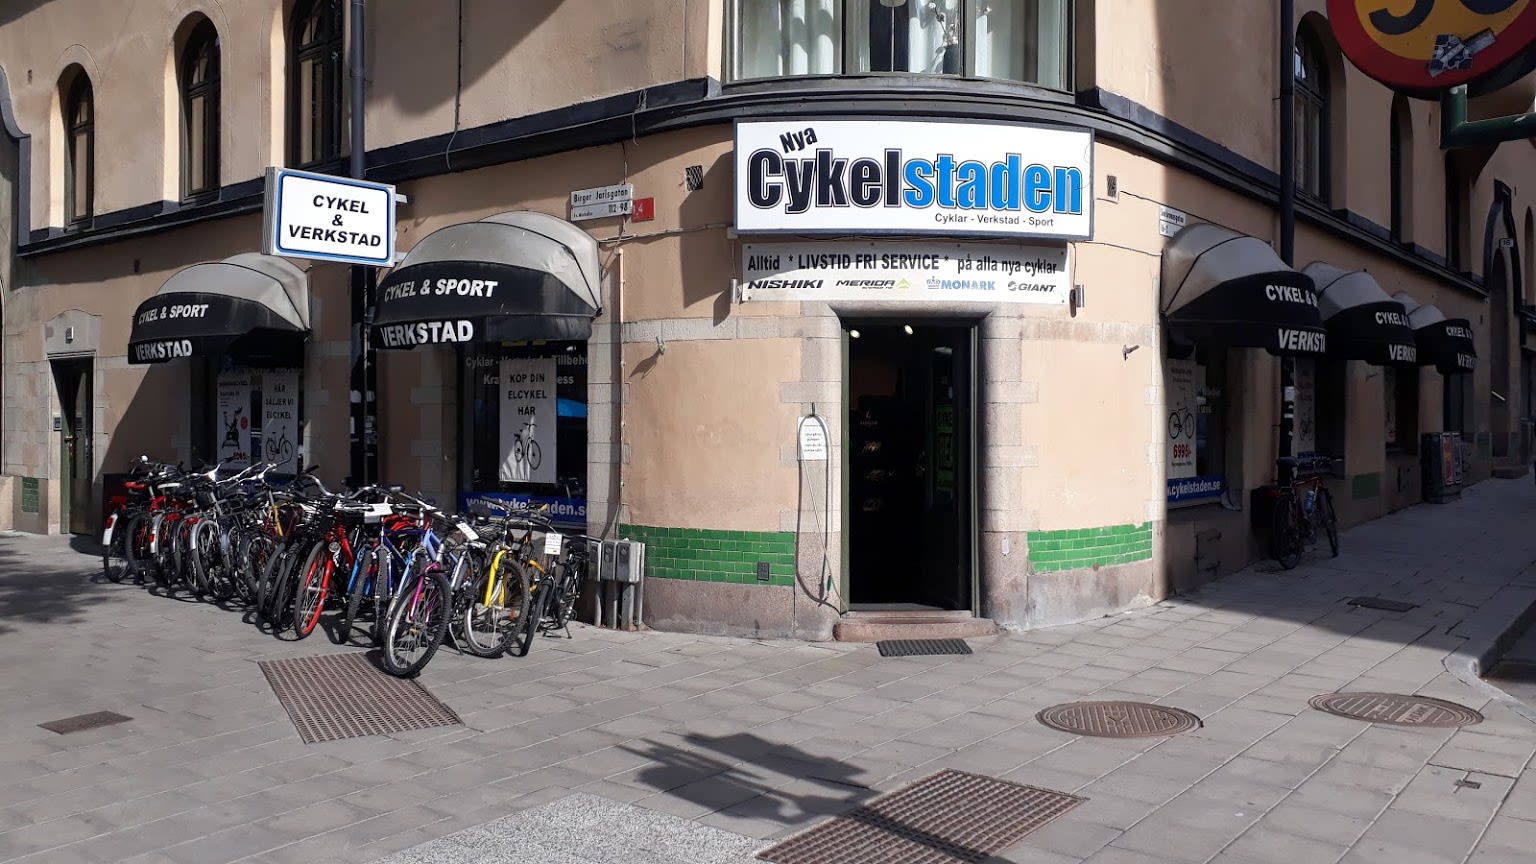 Cykelstaden AB Elcykel & Cykel, Stockholm